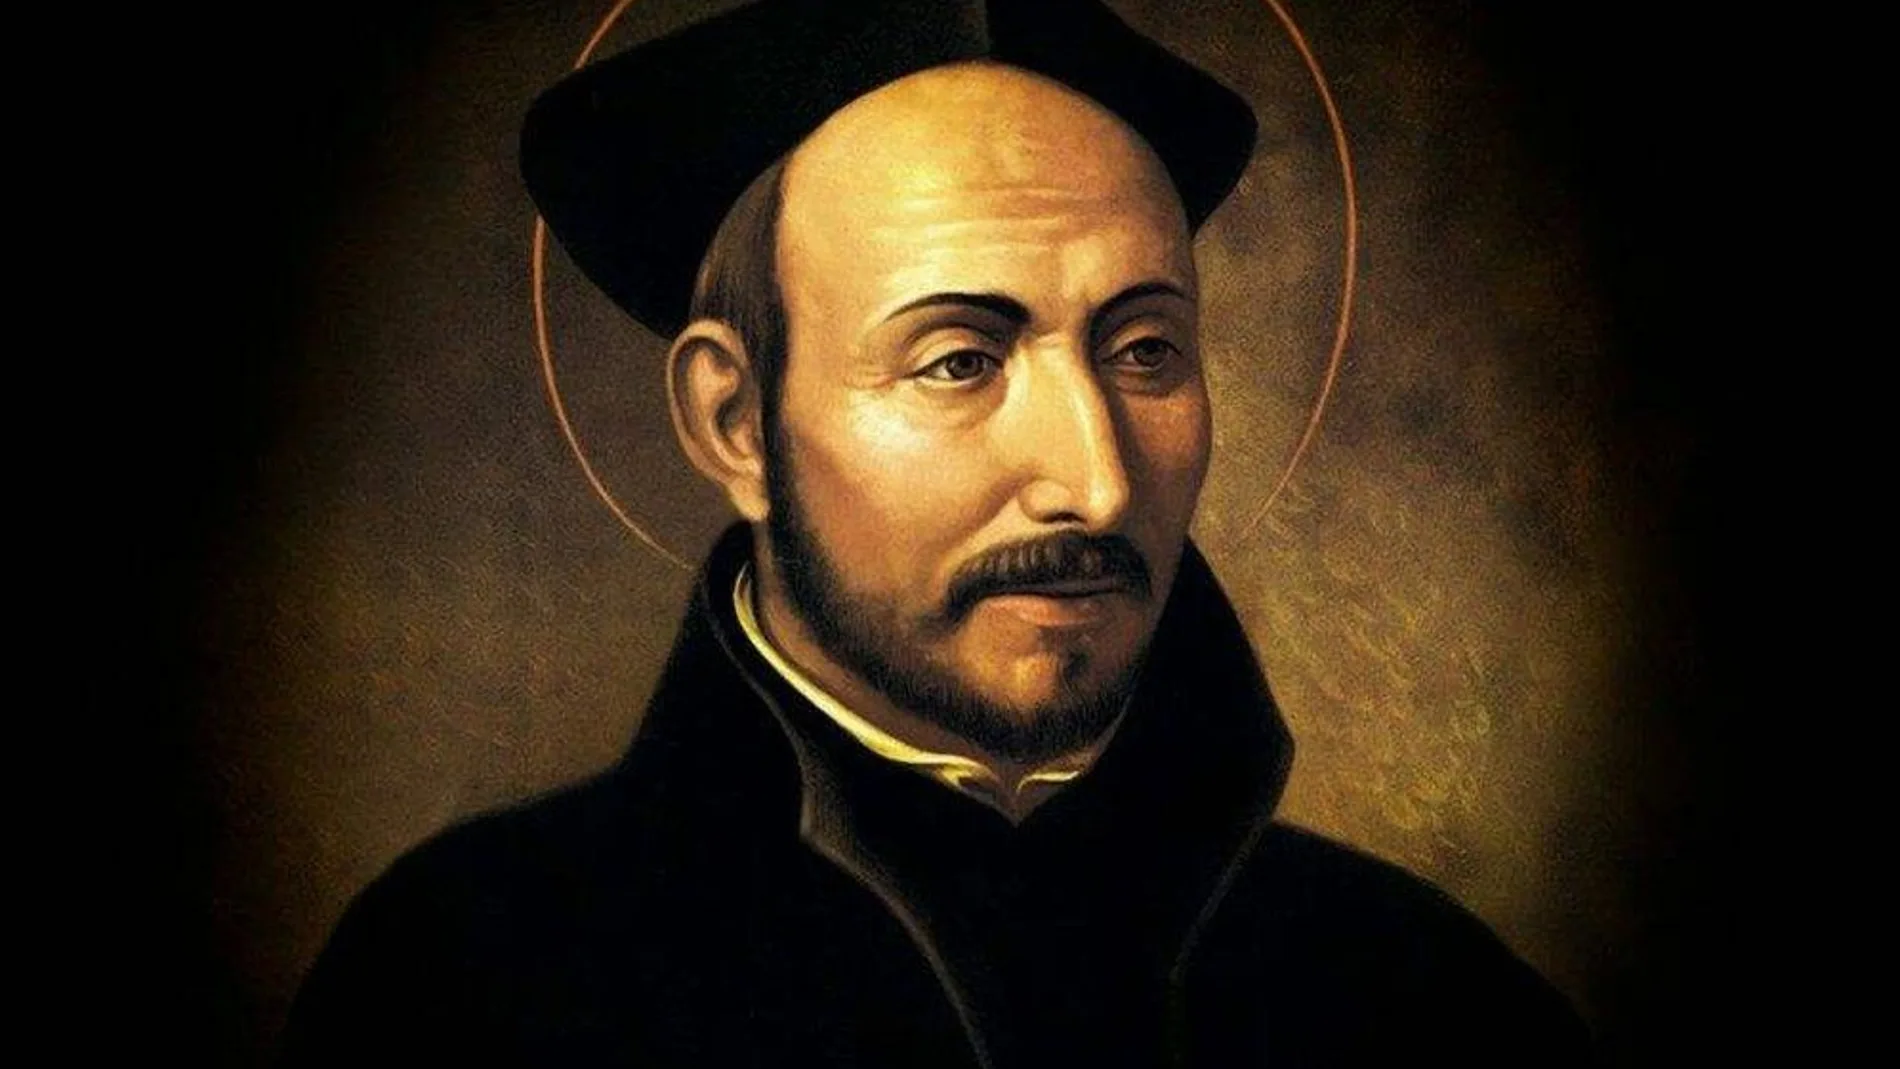 Retrato de San Ignacio de Loyola, fundador de la Compañía de Jesús